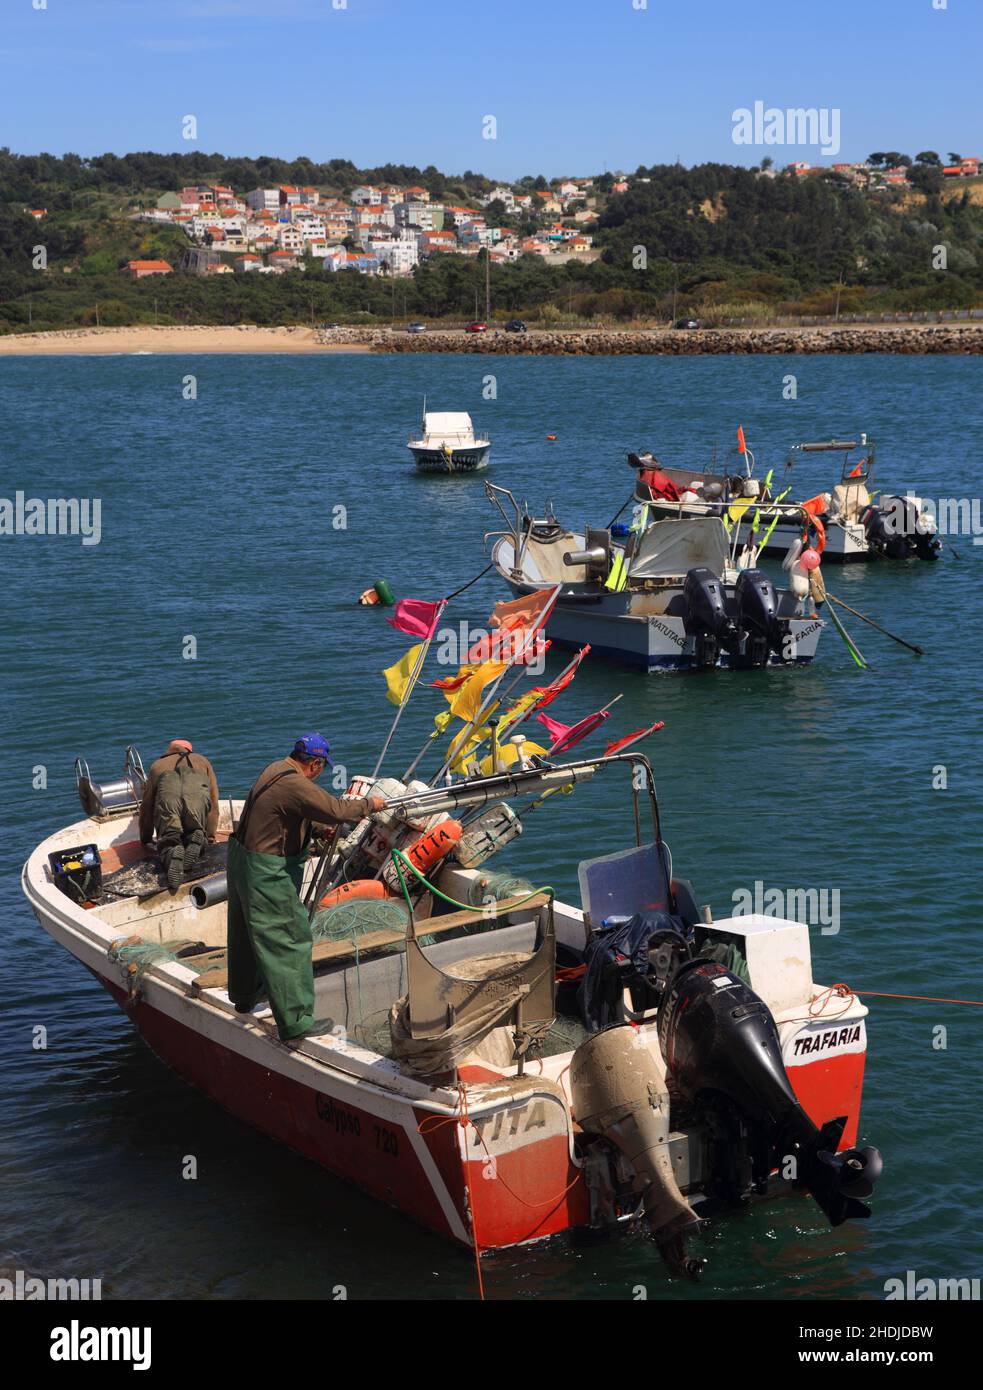 Un équipage de pêcheurs côtiers prépare leur bateau pour la mer dans le petit port de Traferia, sur l'estuaire du Tage. Le mois d'avril Banque D'Images